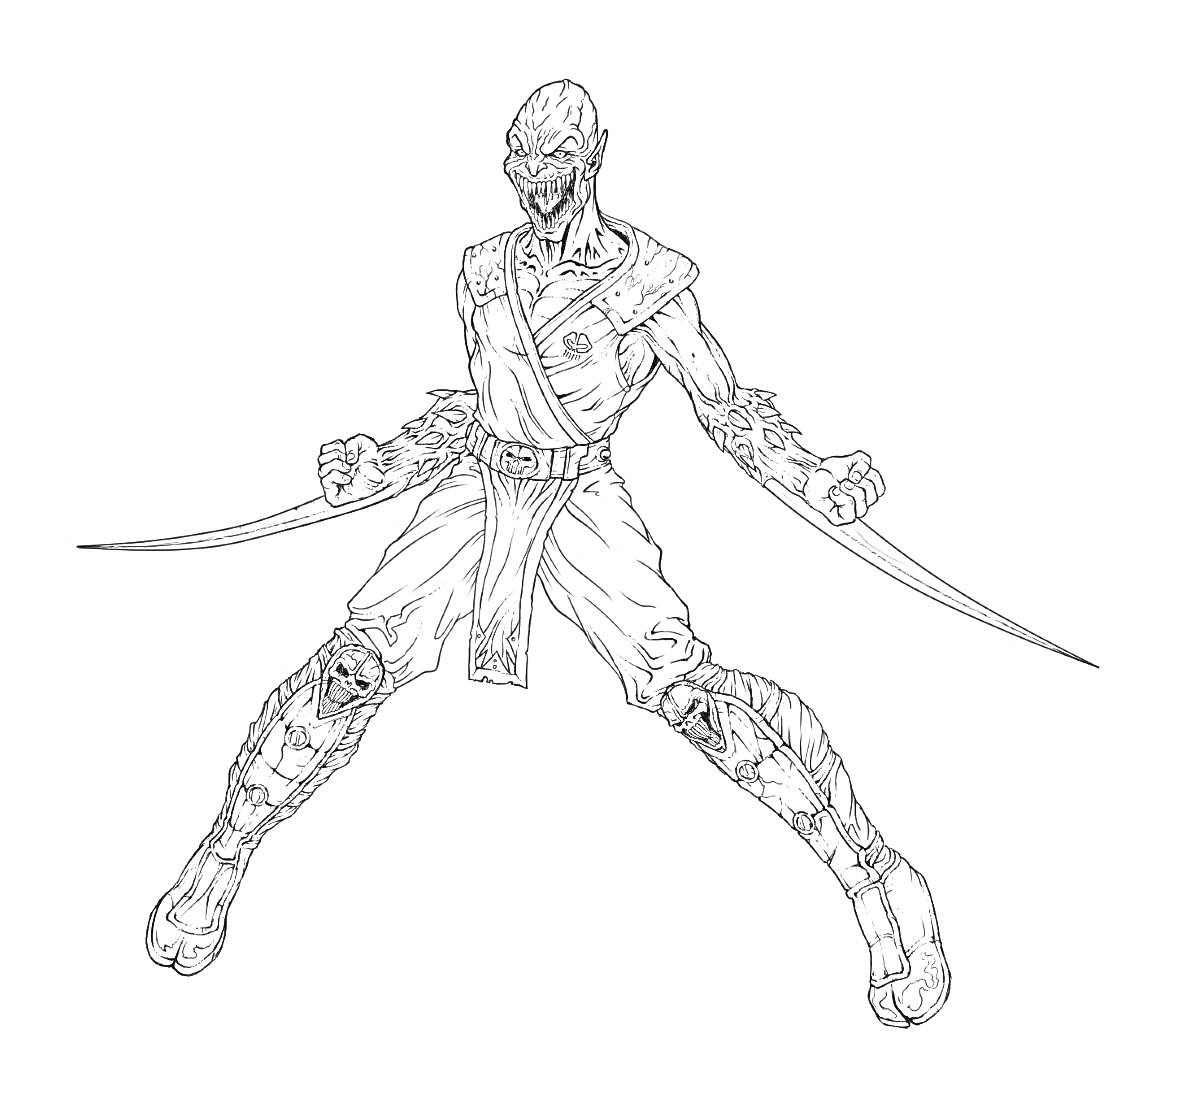 Раскраска Воин из Мортал Комбат с двумя кинжалами, в рваной одежде и маске, с оголённым торсом и боевыми наплечниками